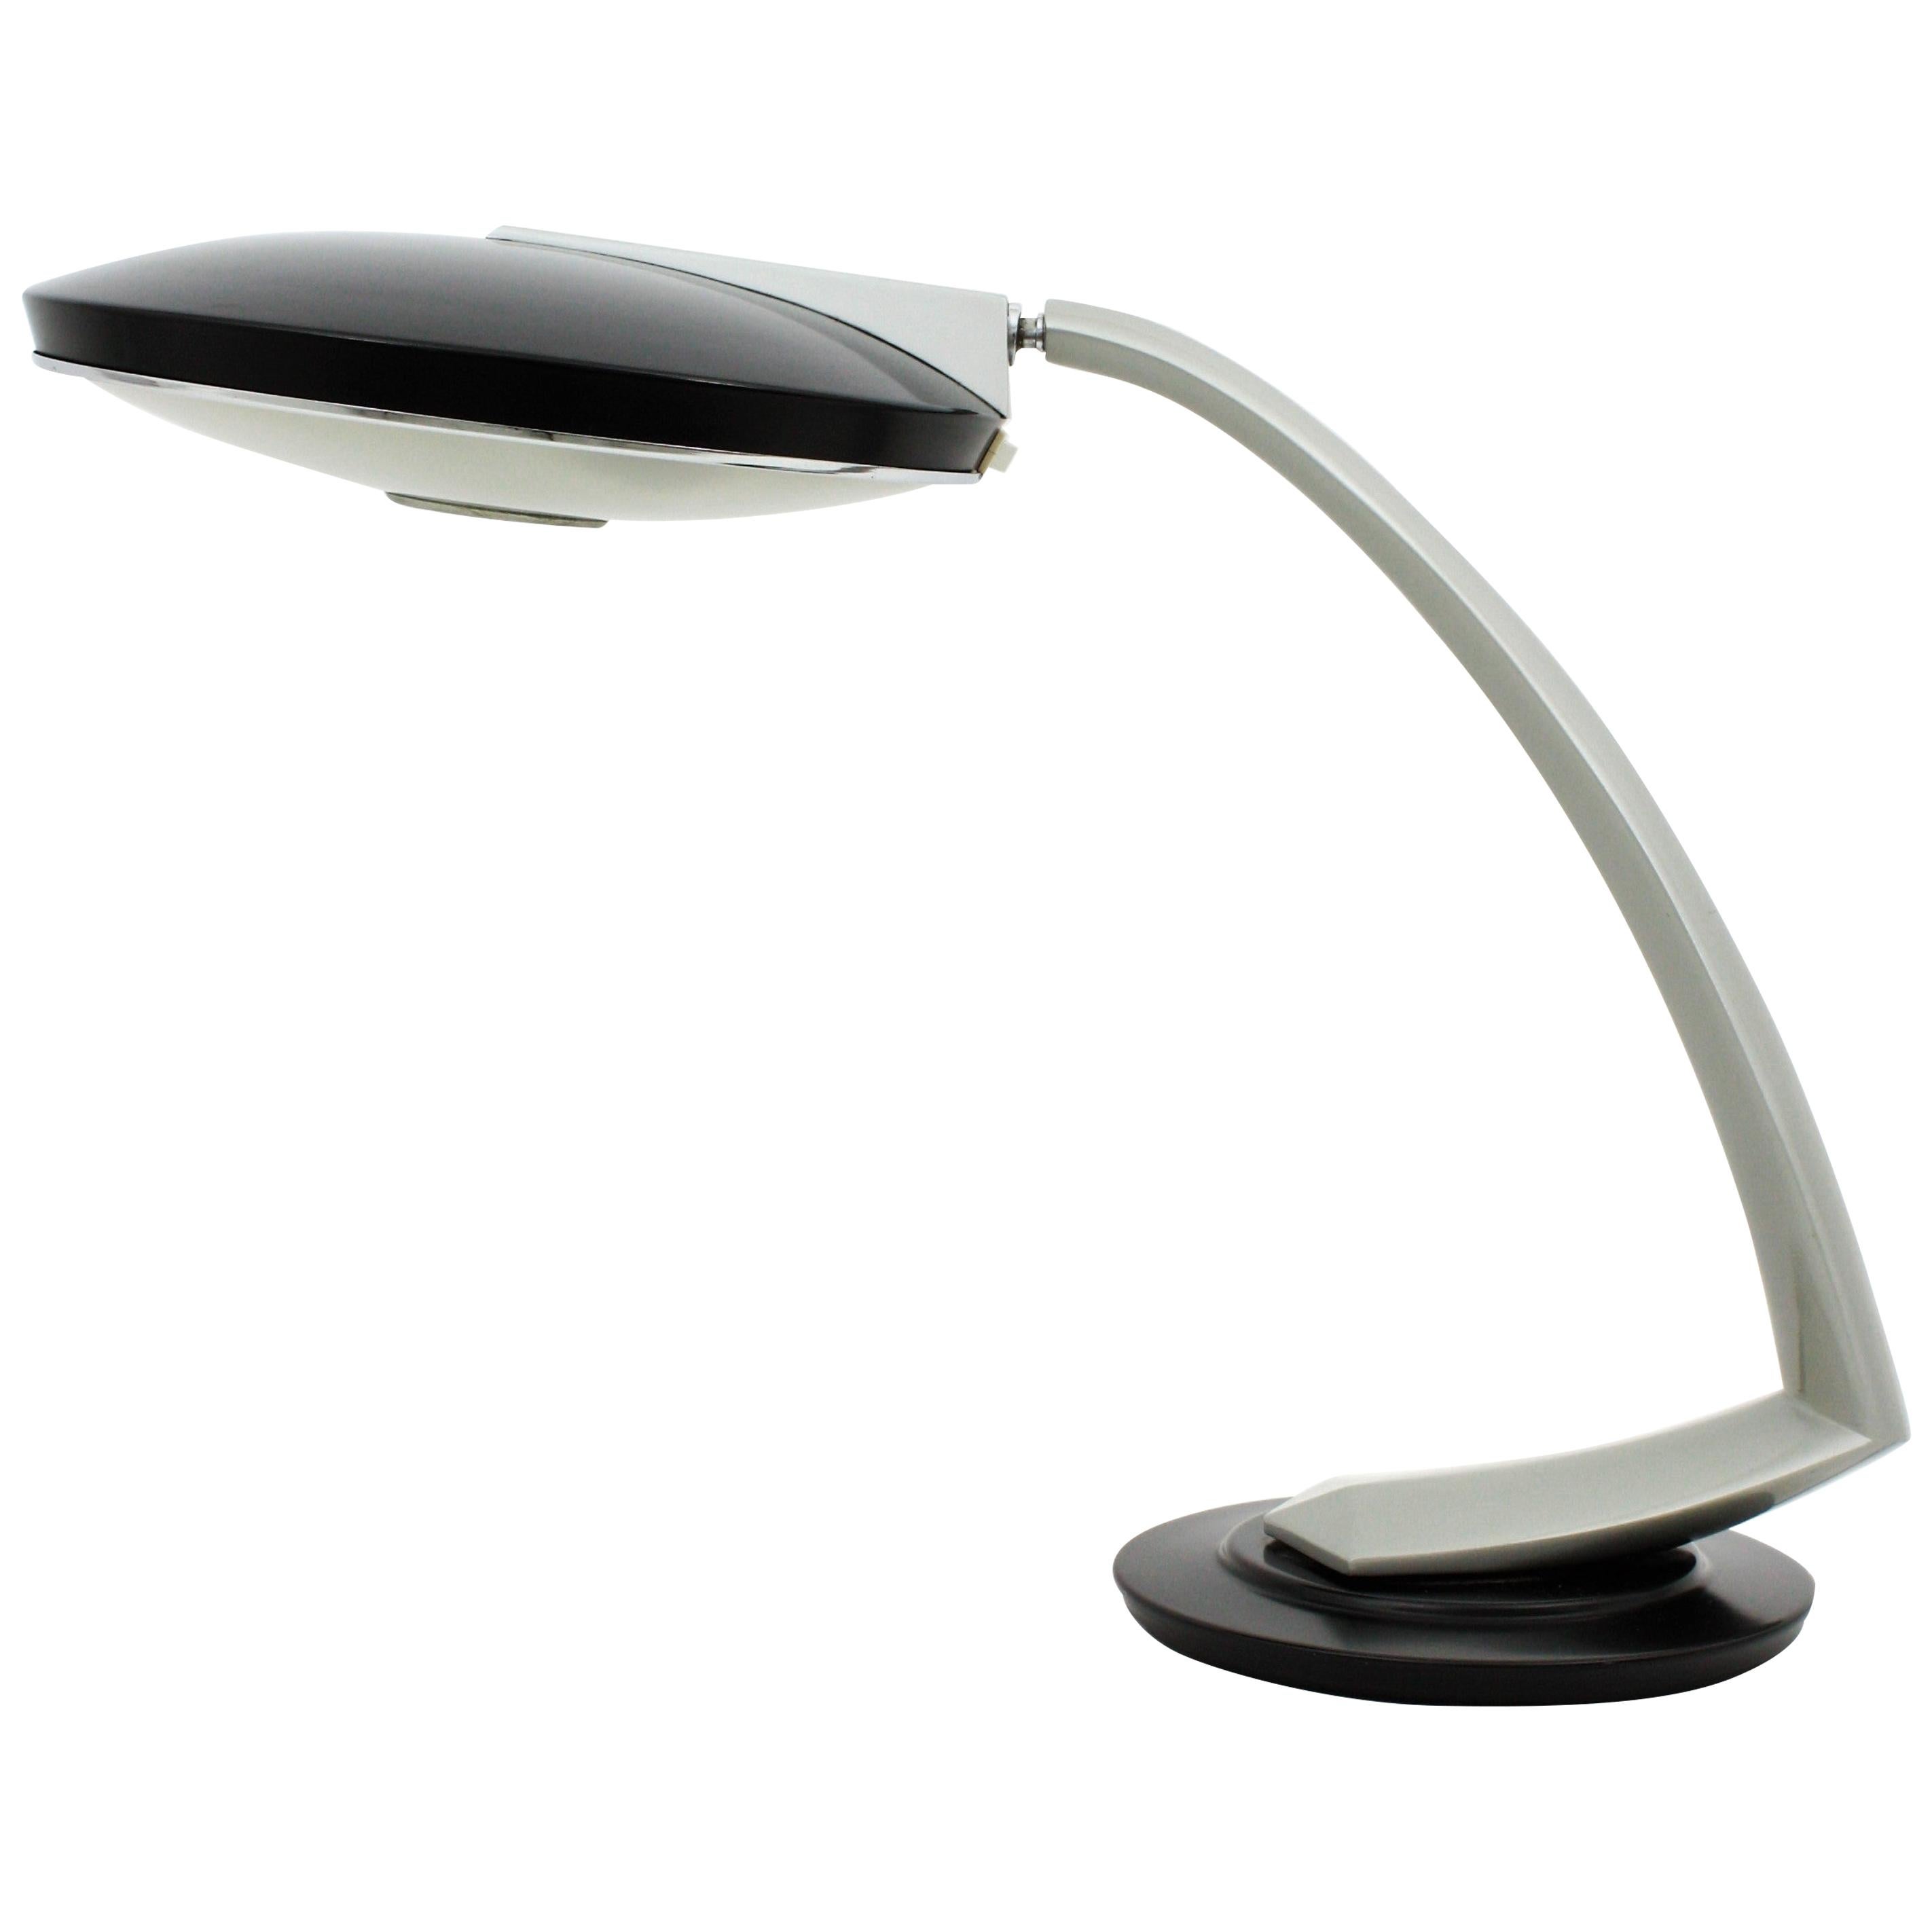 Desk lamp model 